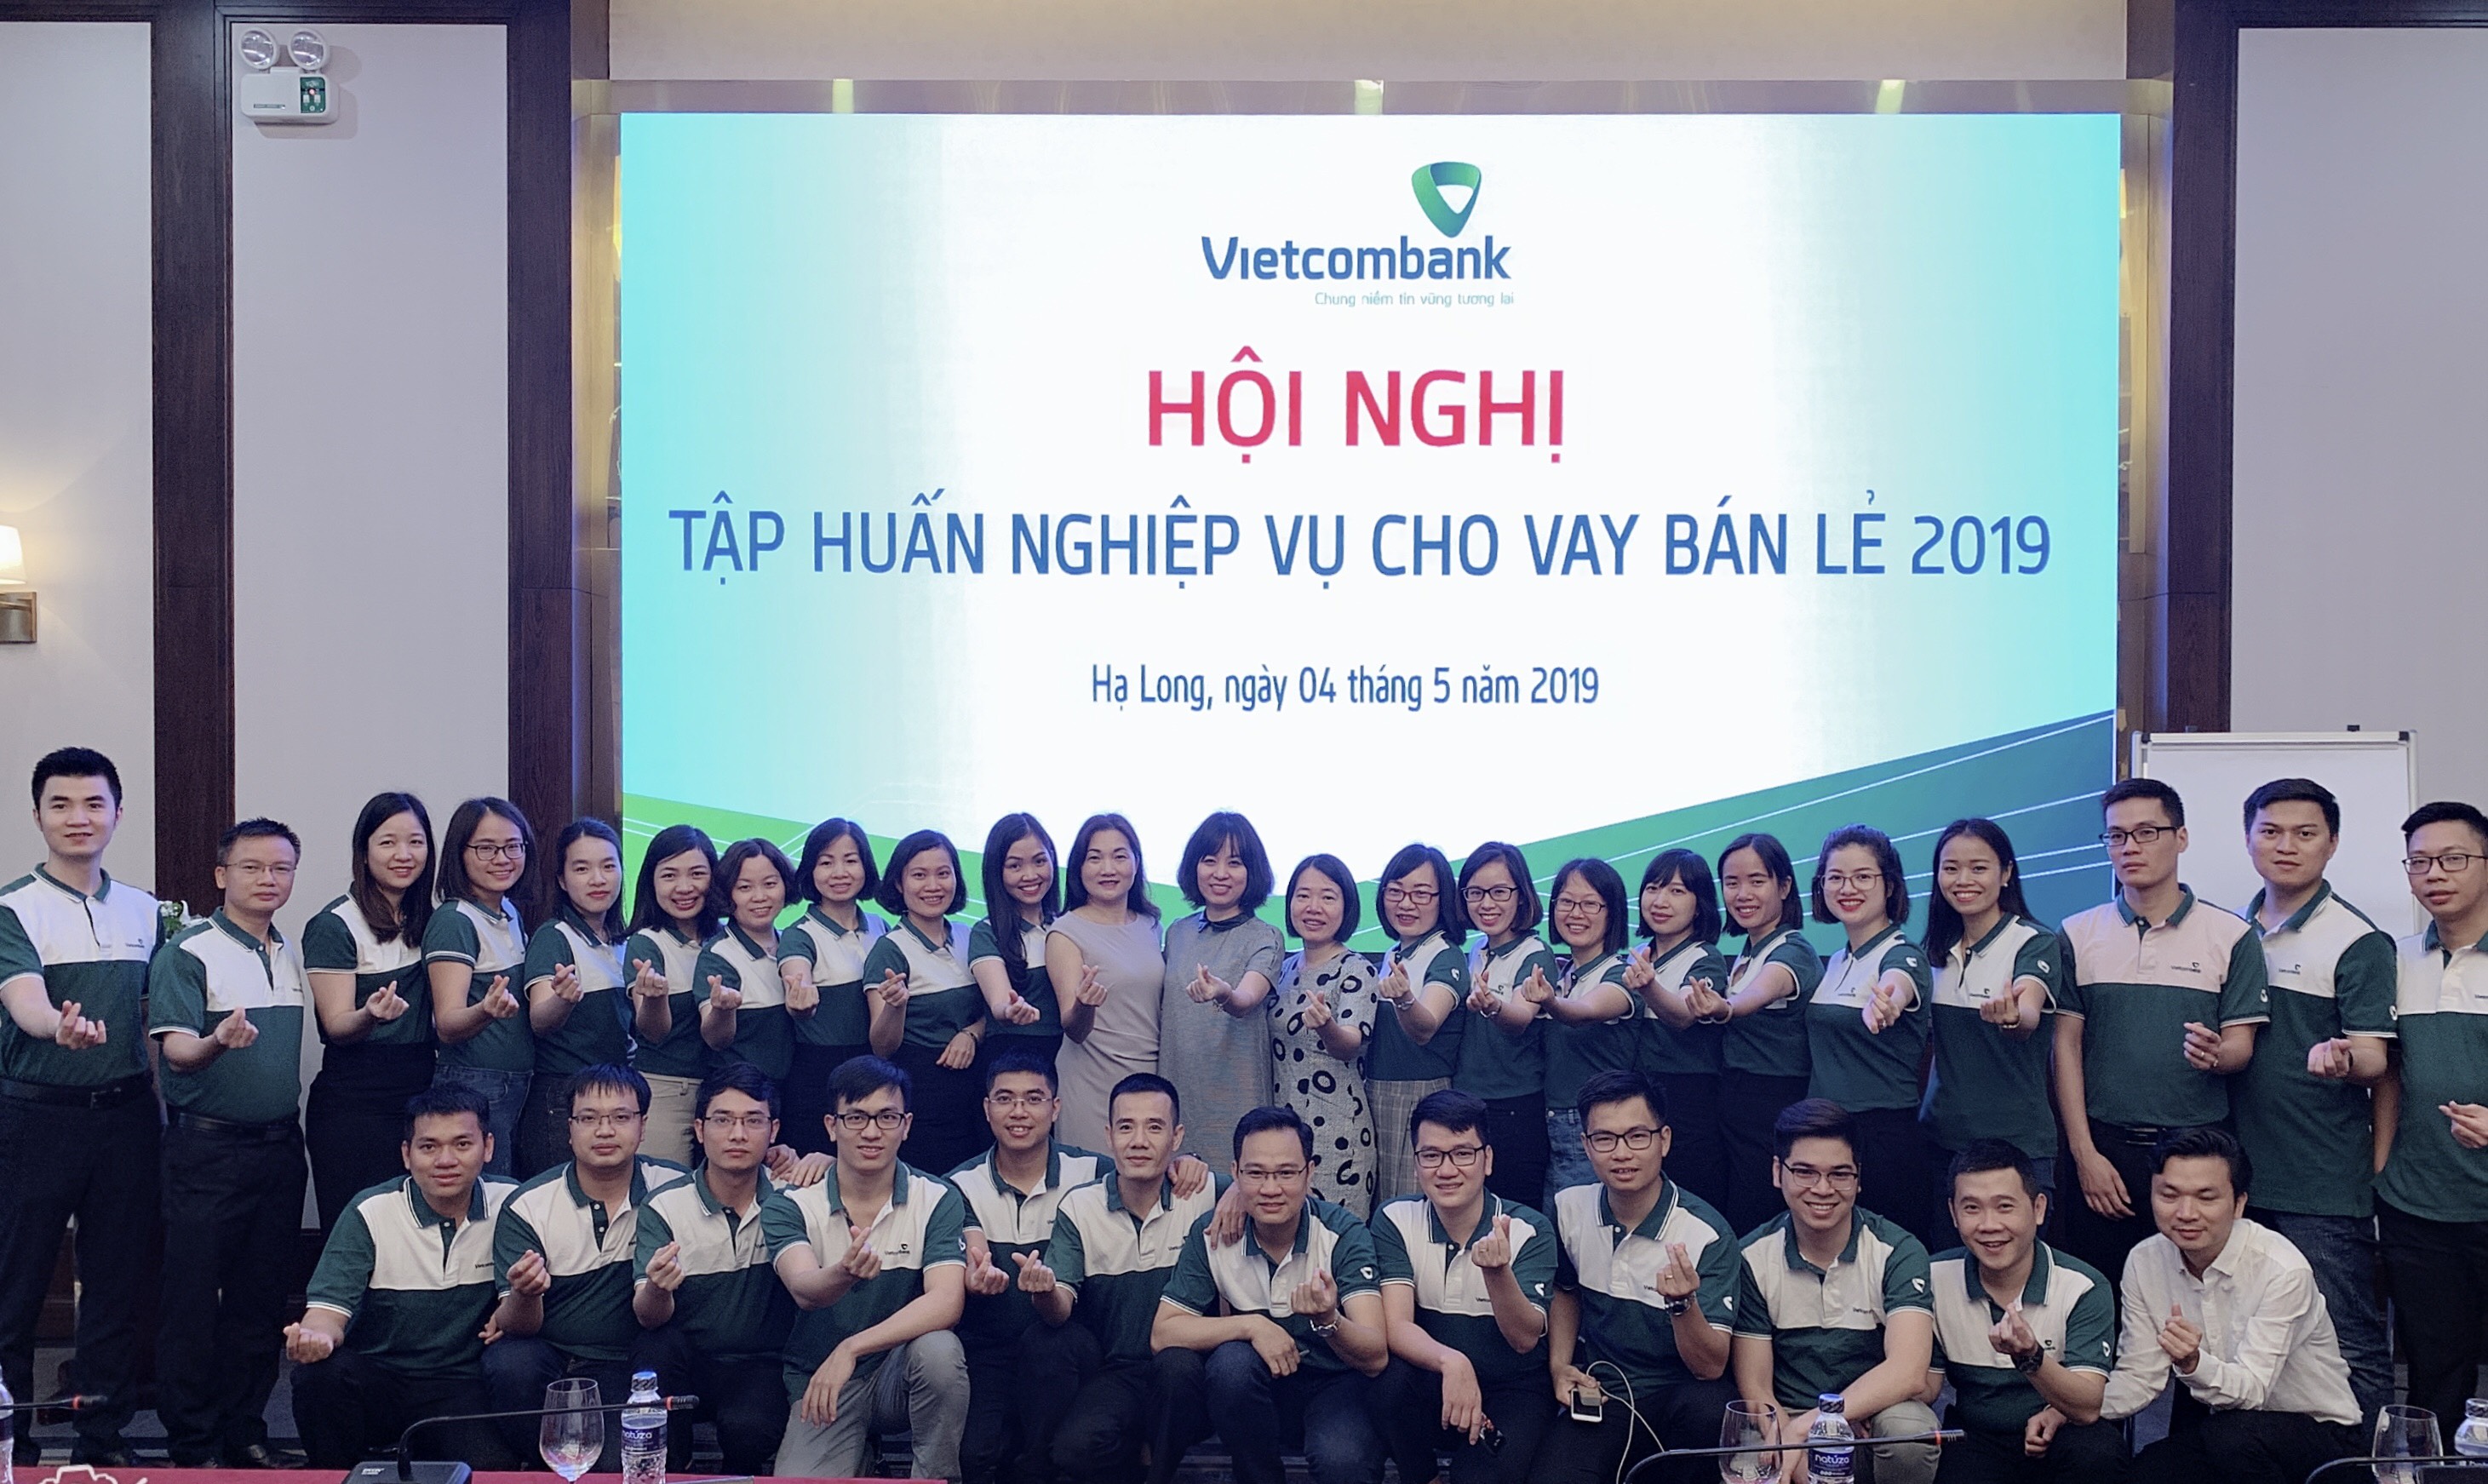 Vietcombank Bắc Ninh tổ chức hội nghị tập huấn nghiệp vụ cho vay bán lẻ năm 2019 	